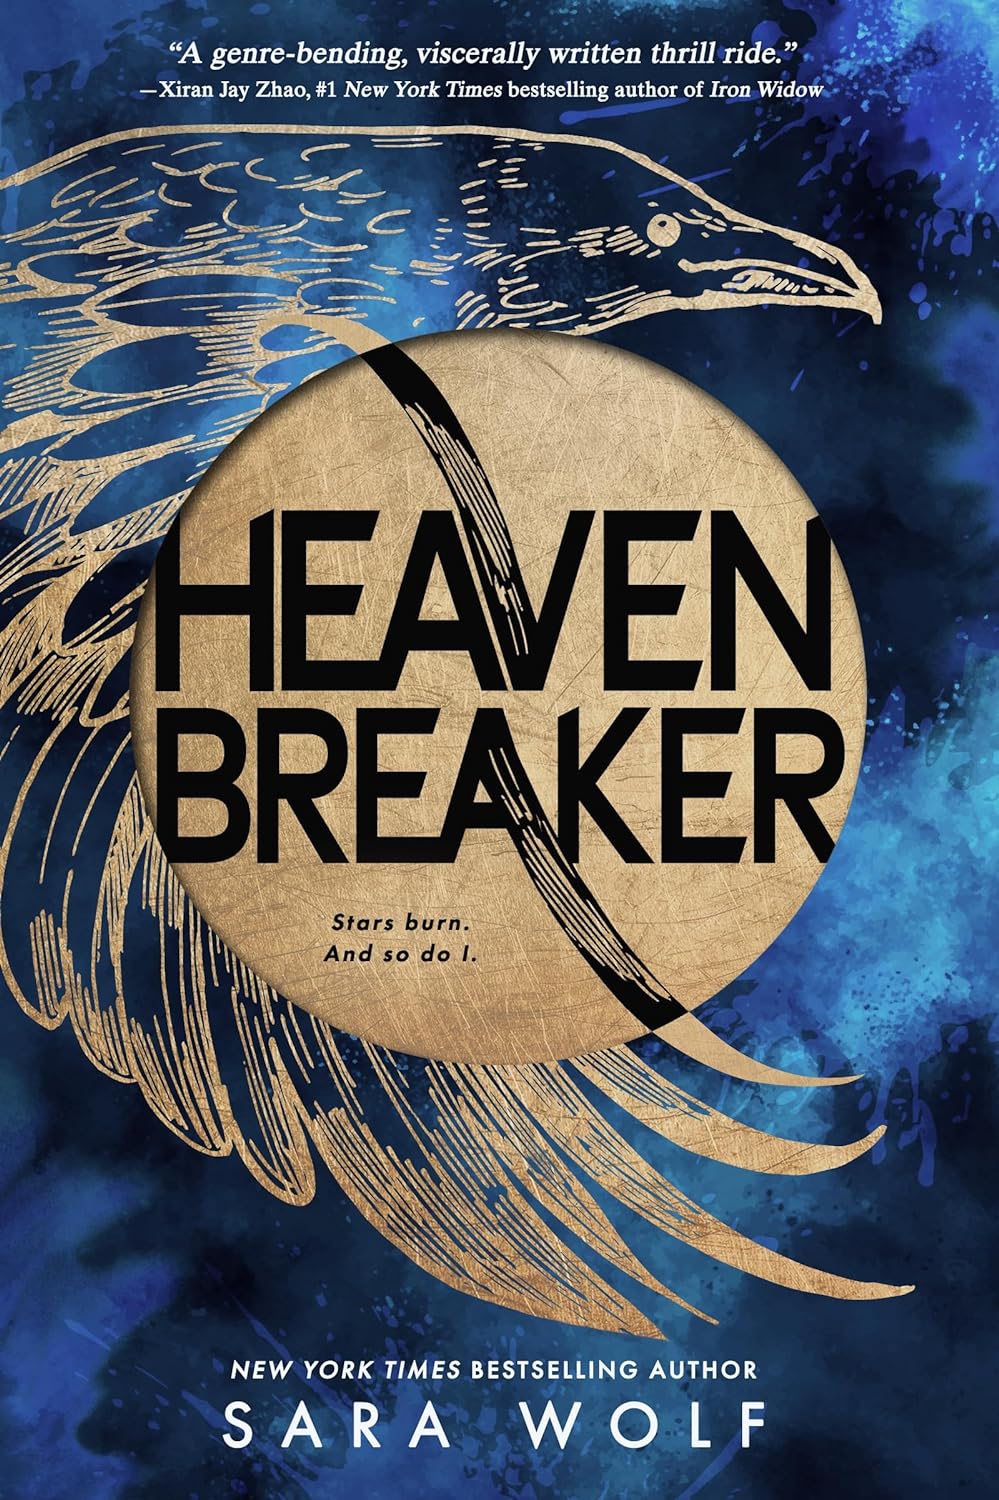 Image for "Heavenbreaker"